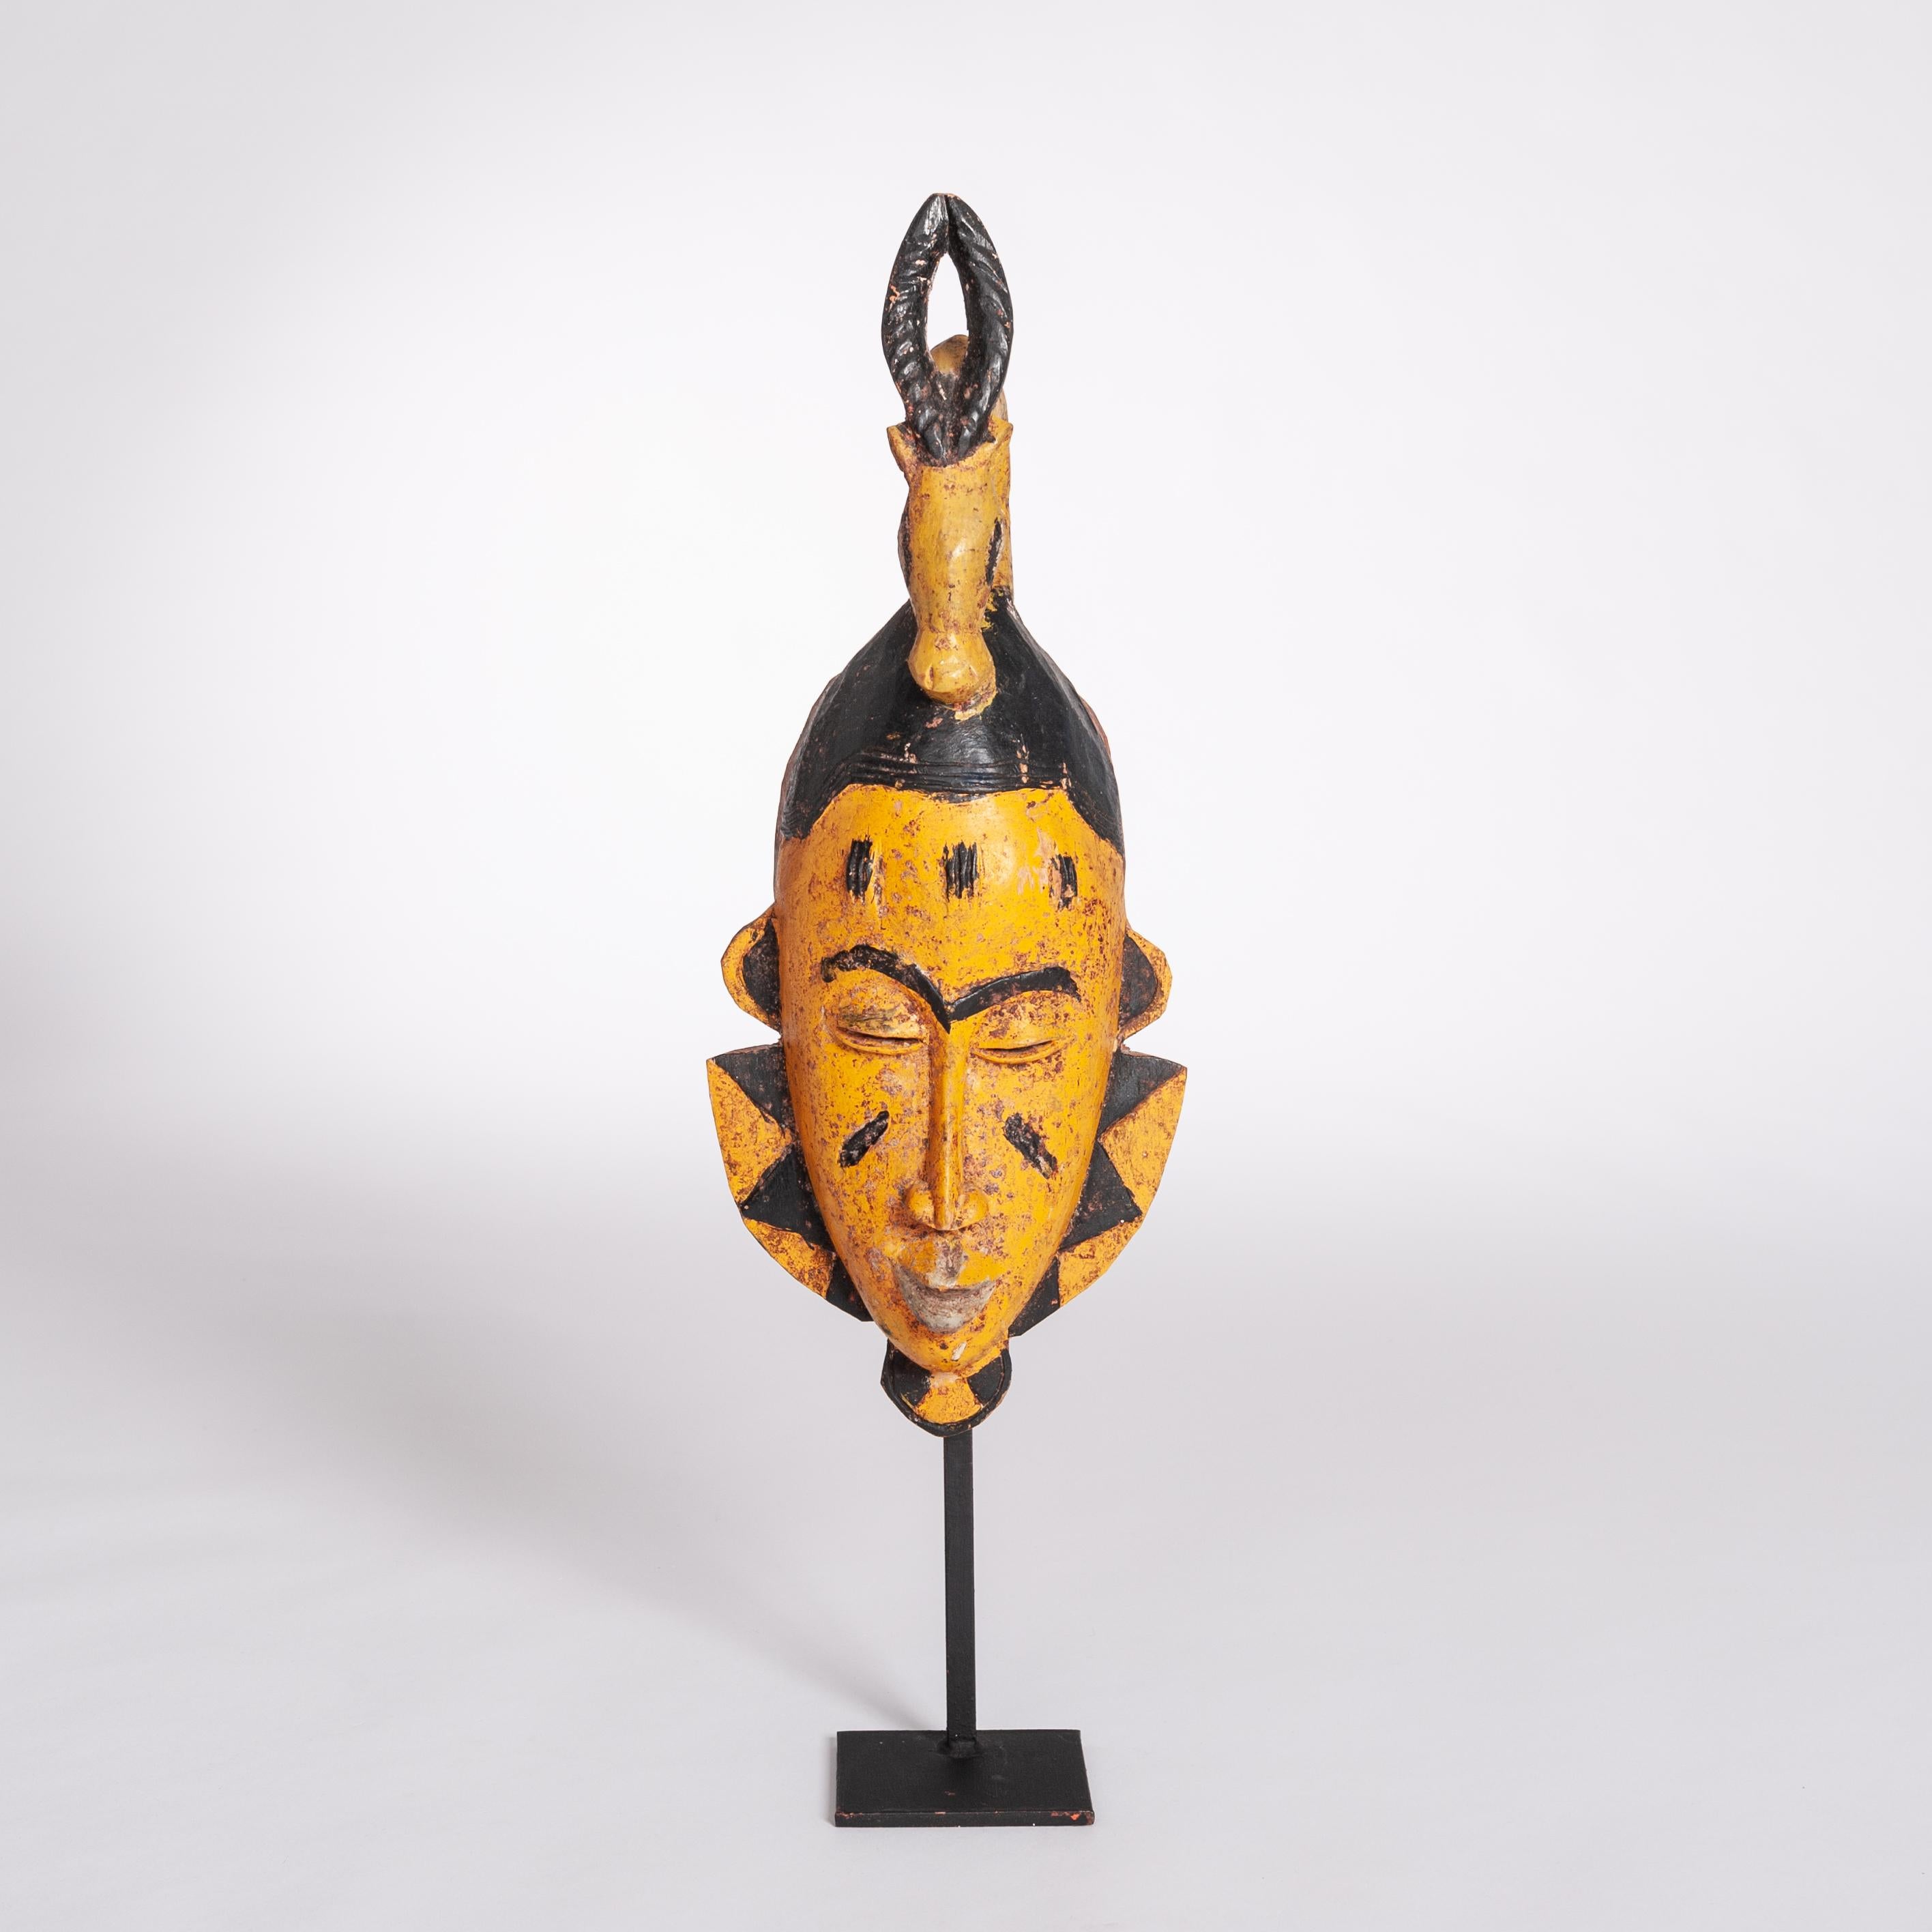 Ausdrucksstarke, interessante afrikanische Baoulé-Maske von der Elfenbeinküste aus dem letzten Drittel des letzten Jahrhunderts, aus Holz geschnitzt und polychrom bemalt.
Das Gesicht ist schmal und elegant und hat einen nachdenklichen Ausdruck.
Die